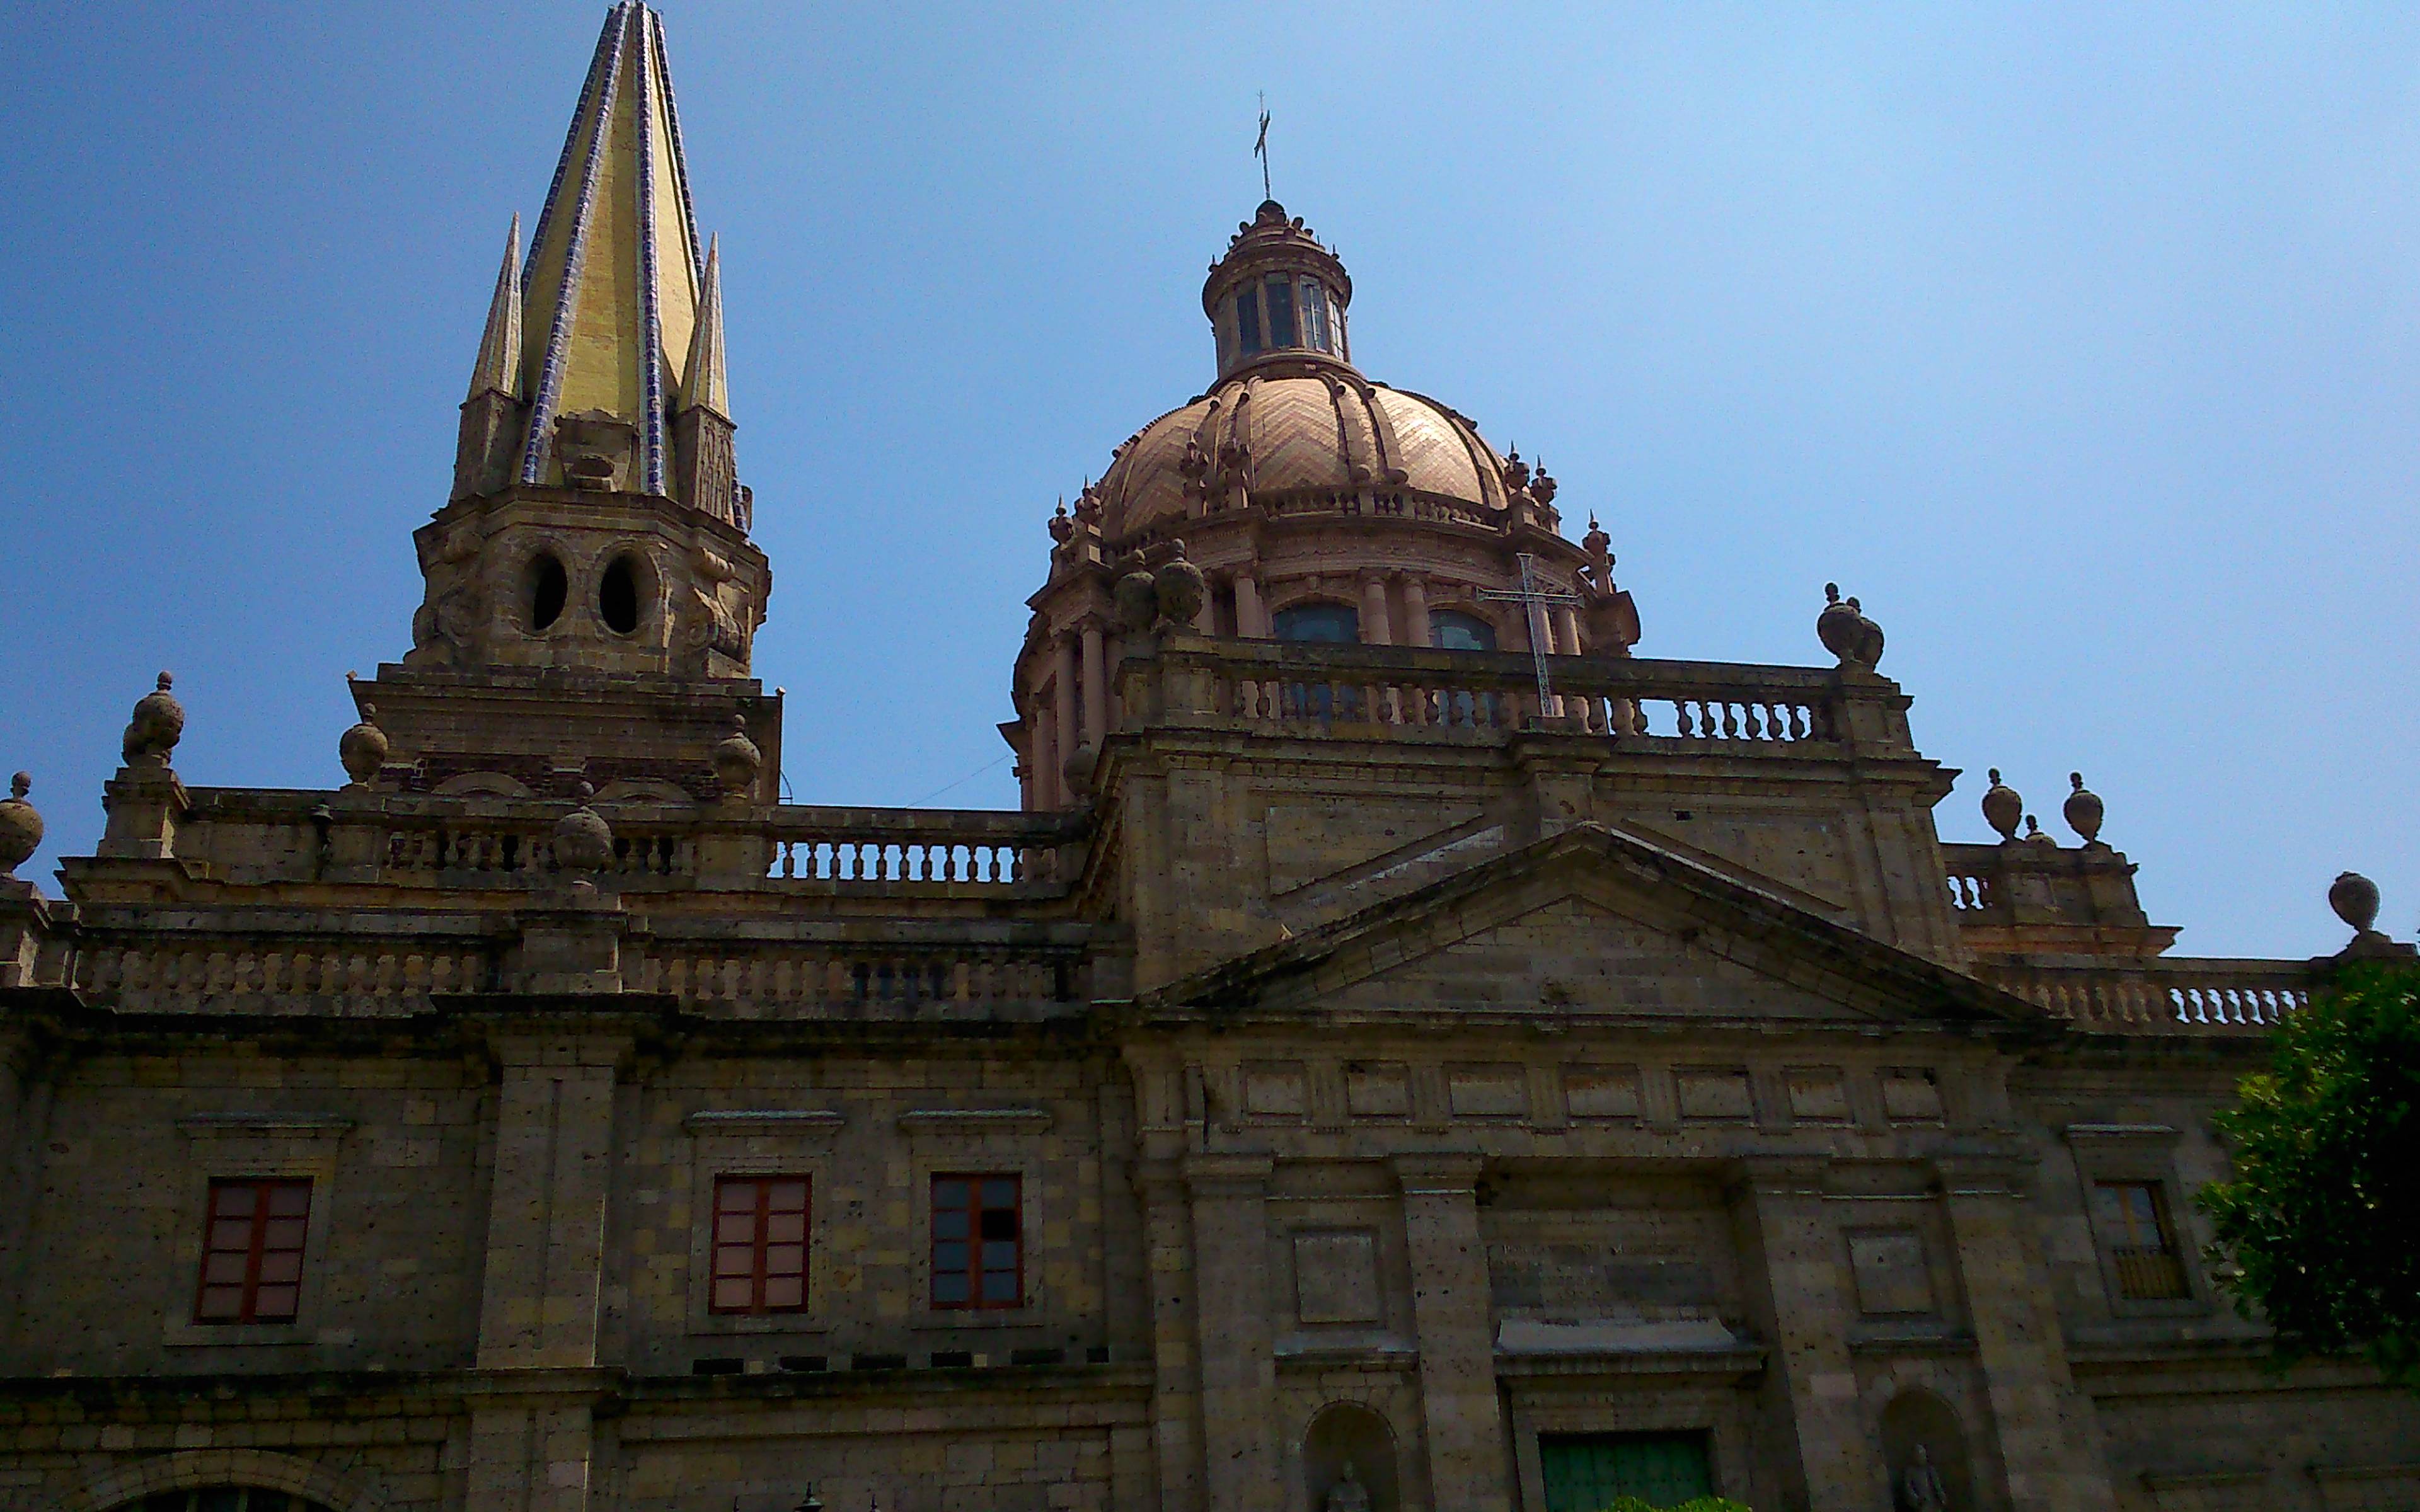 Trasferimento a Guadalajara de Buga e visita del lago Calima